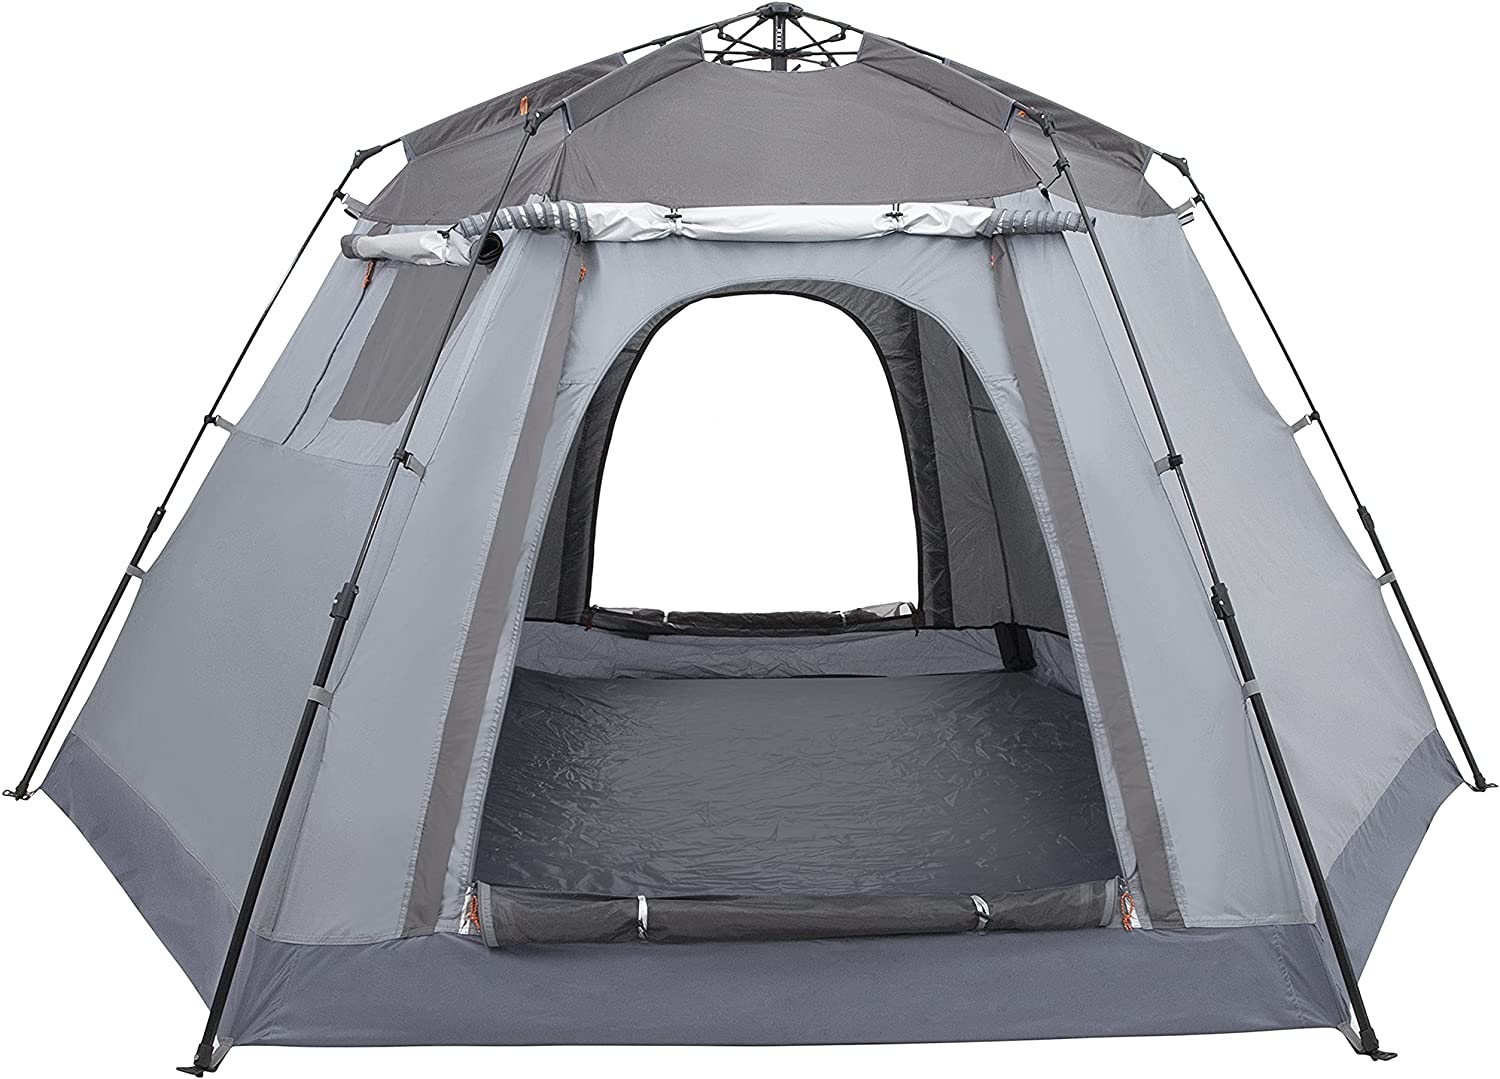 Ubon Outdoor Camping เต็นท์สำหรับ 6 คนเต็นท์กันน้ำติดตั้งทันทีเต็นท์ครอบครัวสองชั้นพร้อม Rain-Fly เต็นท์ห้องโดยสารขนาดใหญ่พิเศษที่ถอดออกได้พร้อมที่บังแดดสำหรับ 3 ฤดูกาล